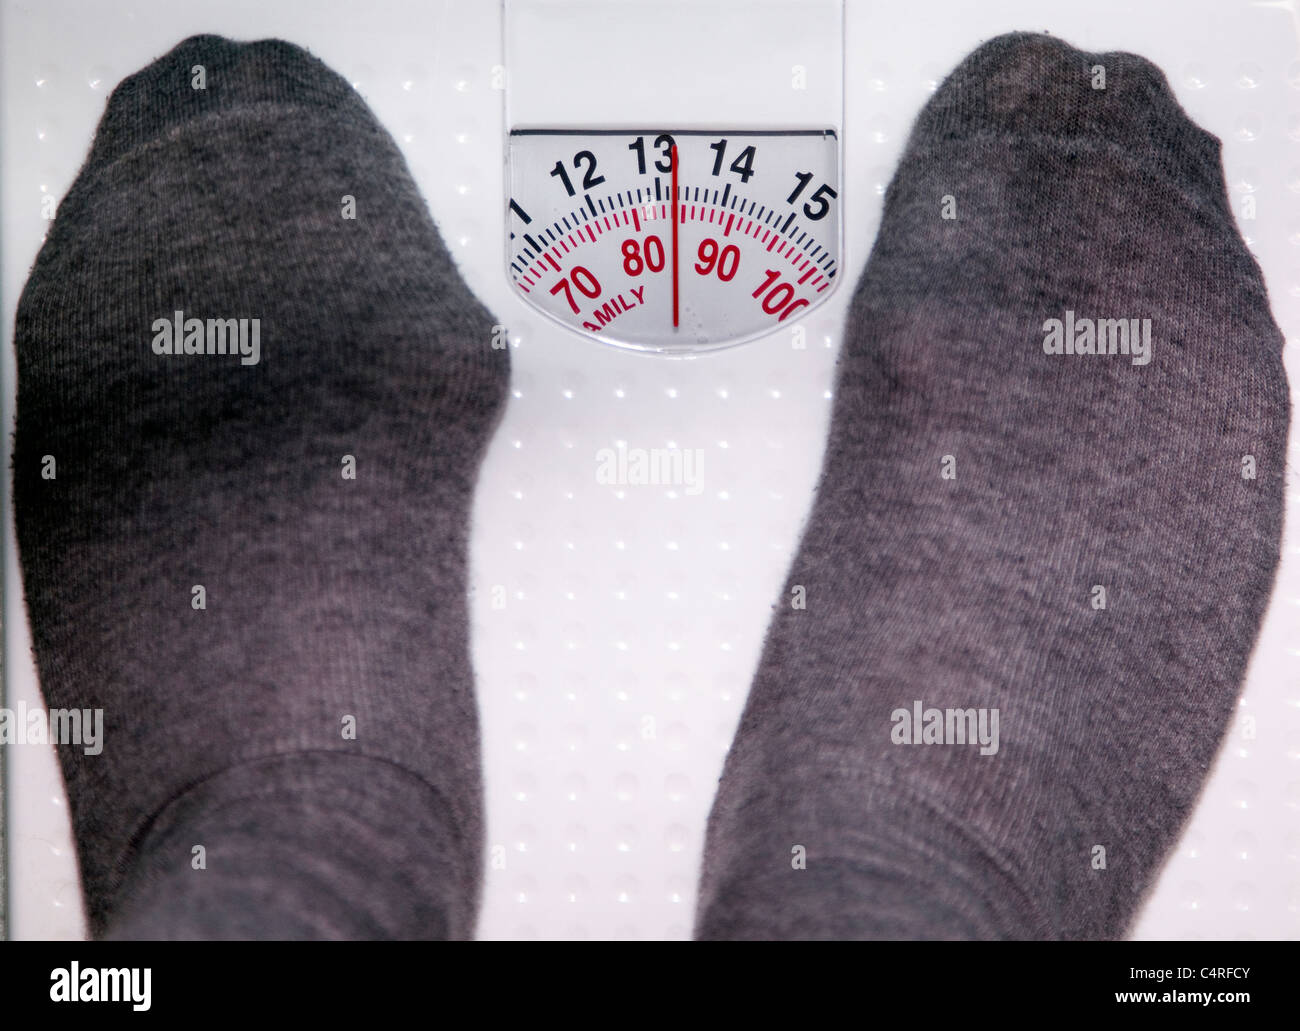 Bilancia in bagno, Londra: obesi medio maschile in età pesa 85 chili:piede sinistro ha bunion rigonfiamento Foto Stock